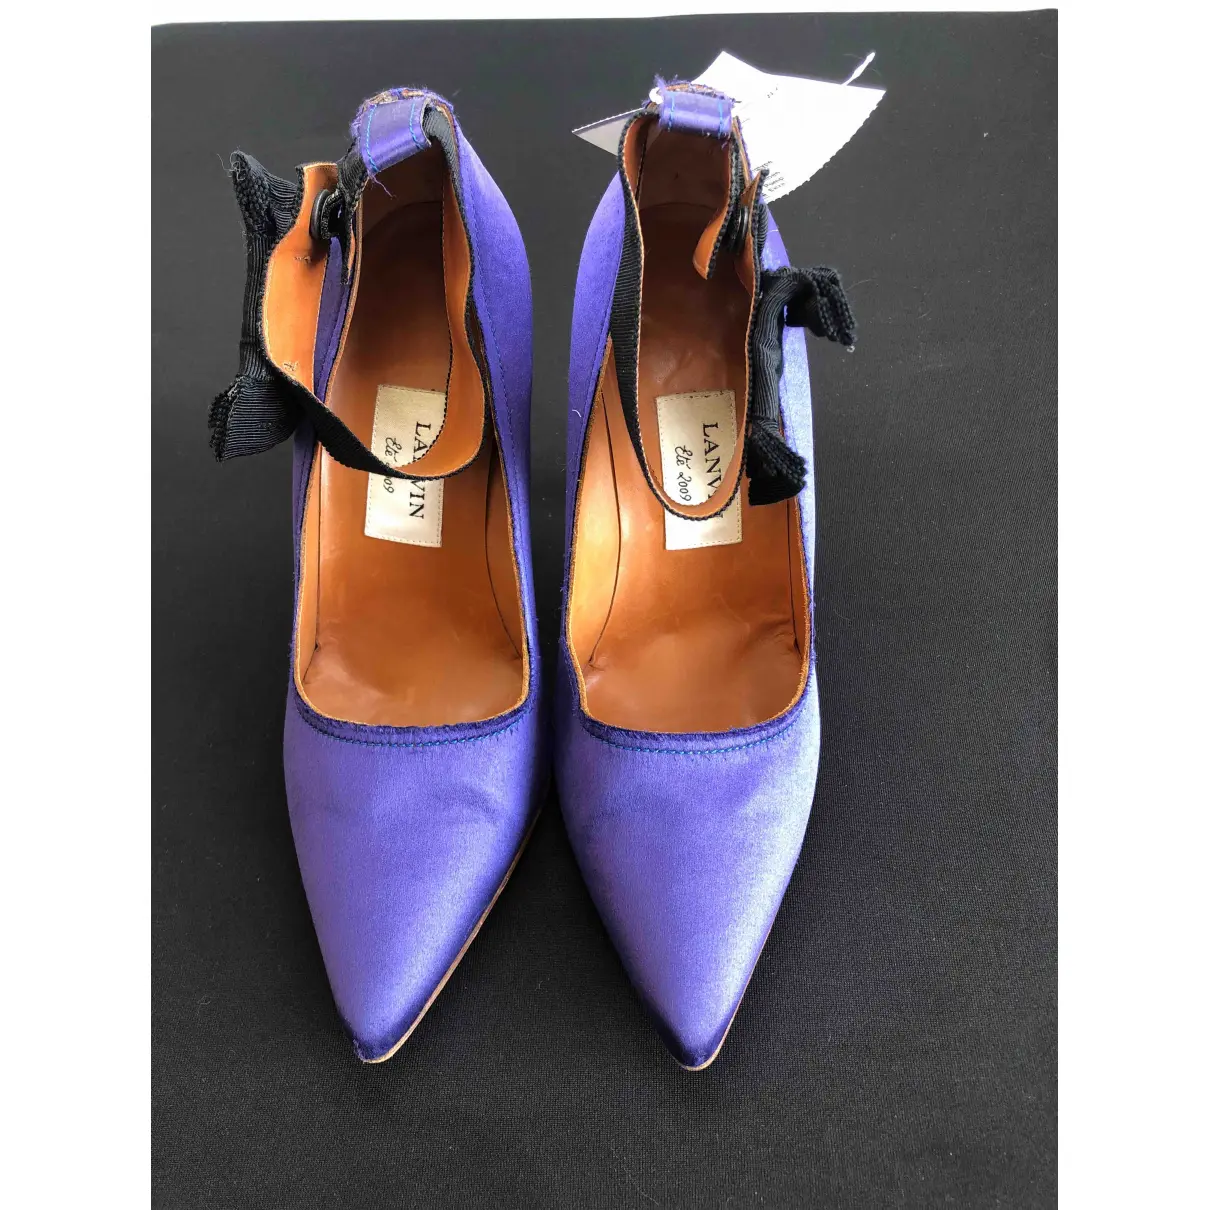 Buy Lanvin Cloth heels online